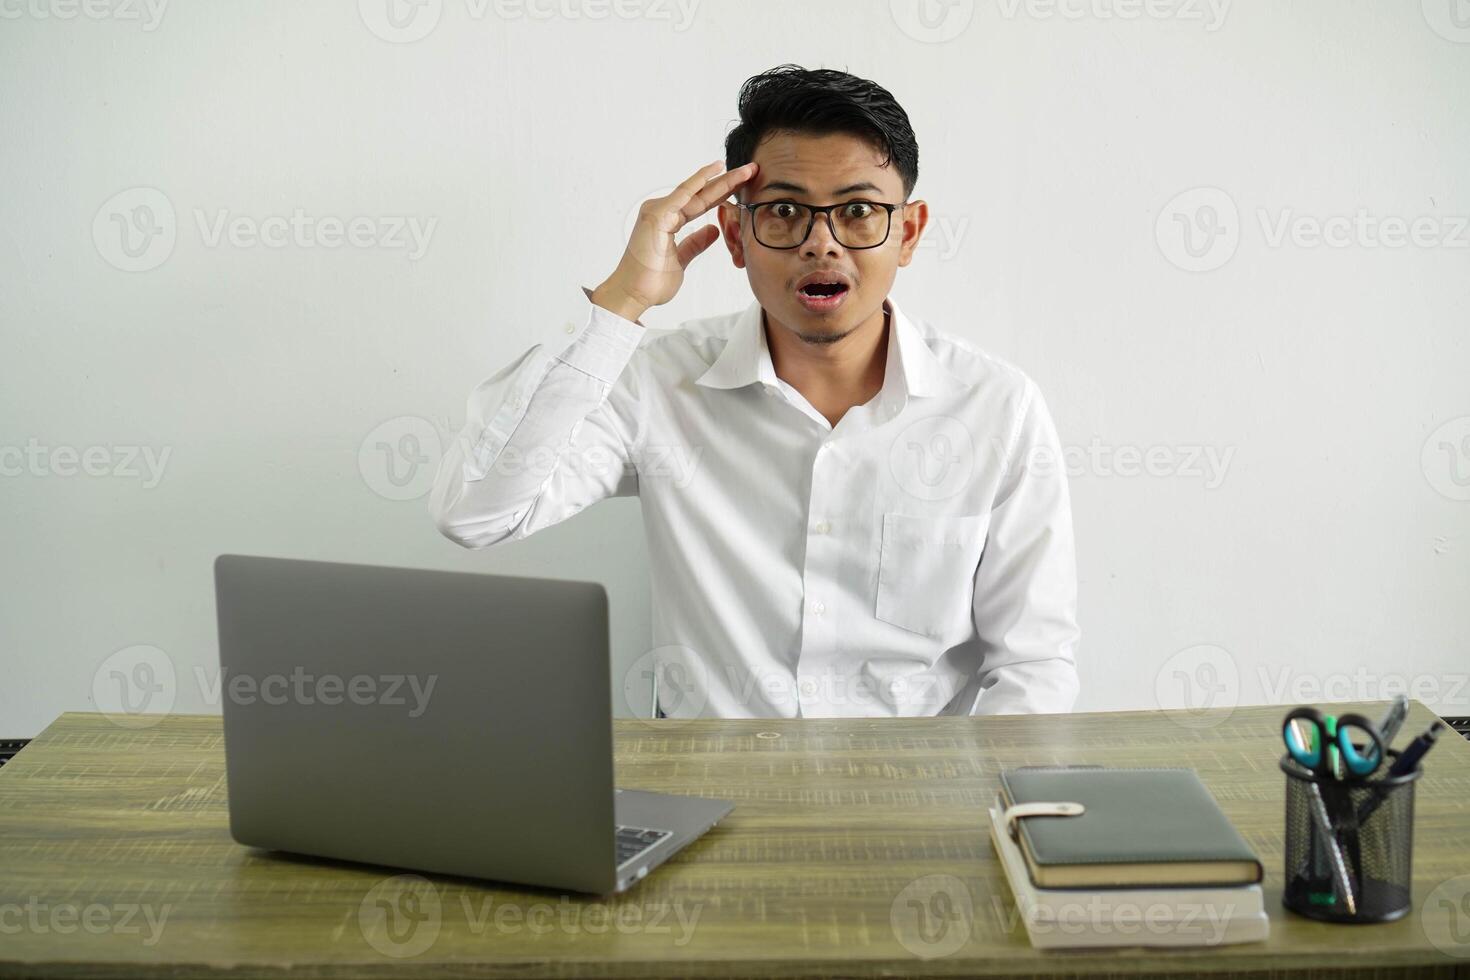 jong Aziatisch zakenman in een werkplaats heeft alleen maar realiseerde iets en heeft van plan de oplossing, vervelend wit overhemd met bril geïsoleerd foto